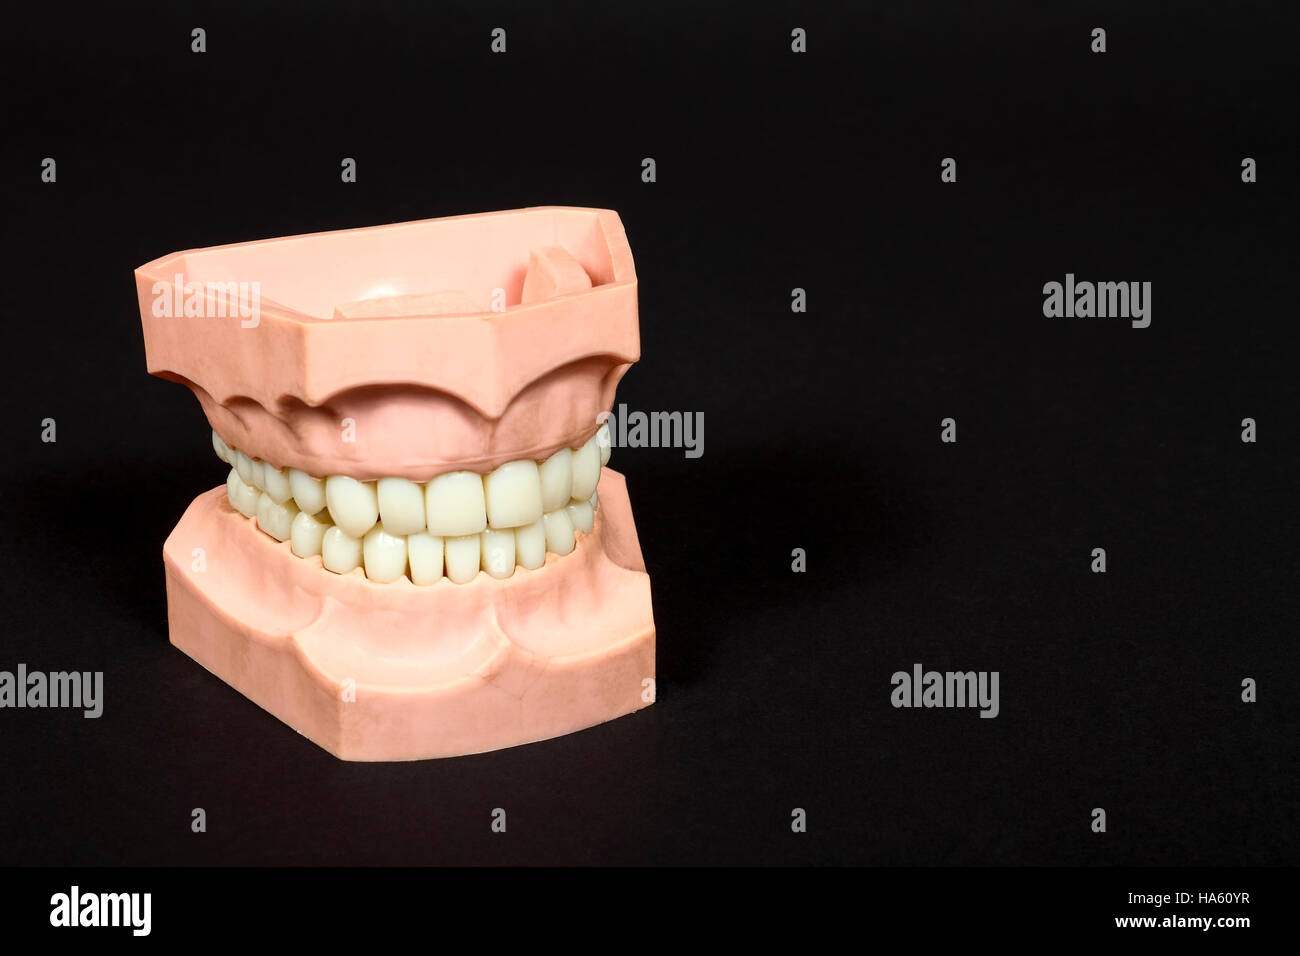 Modèle d'une série de dents humaines qui montrent les dents blanches et les gencives en santé Banque D'Images